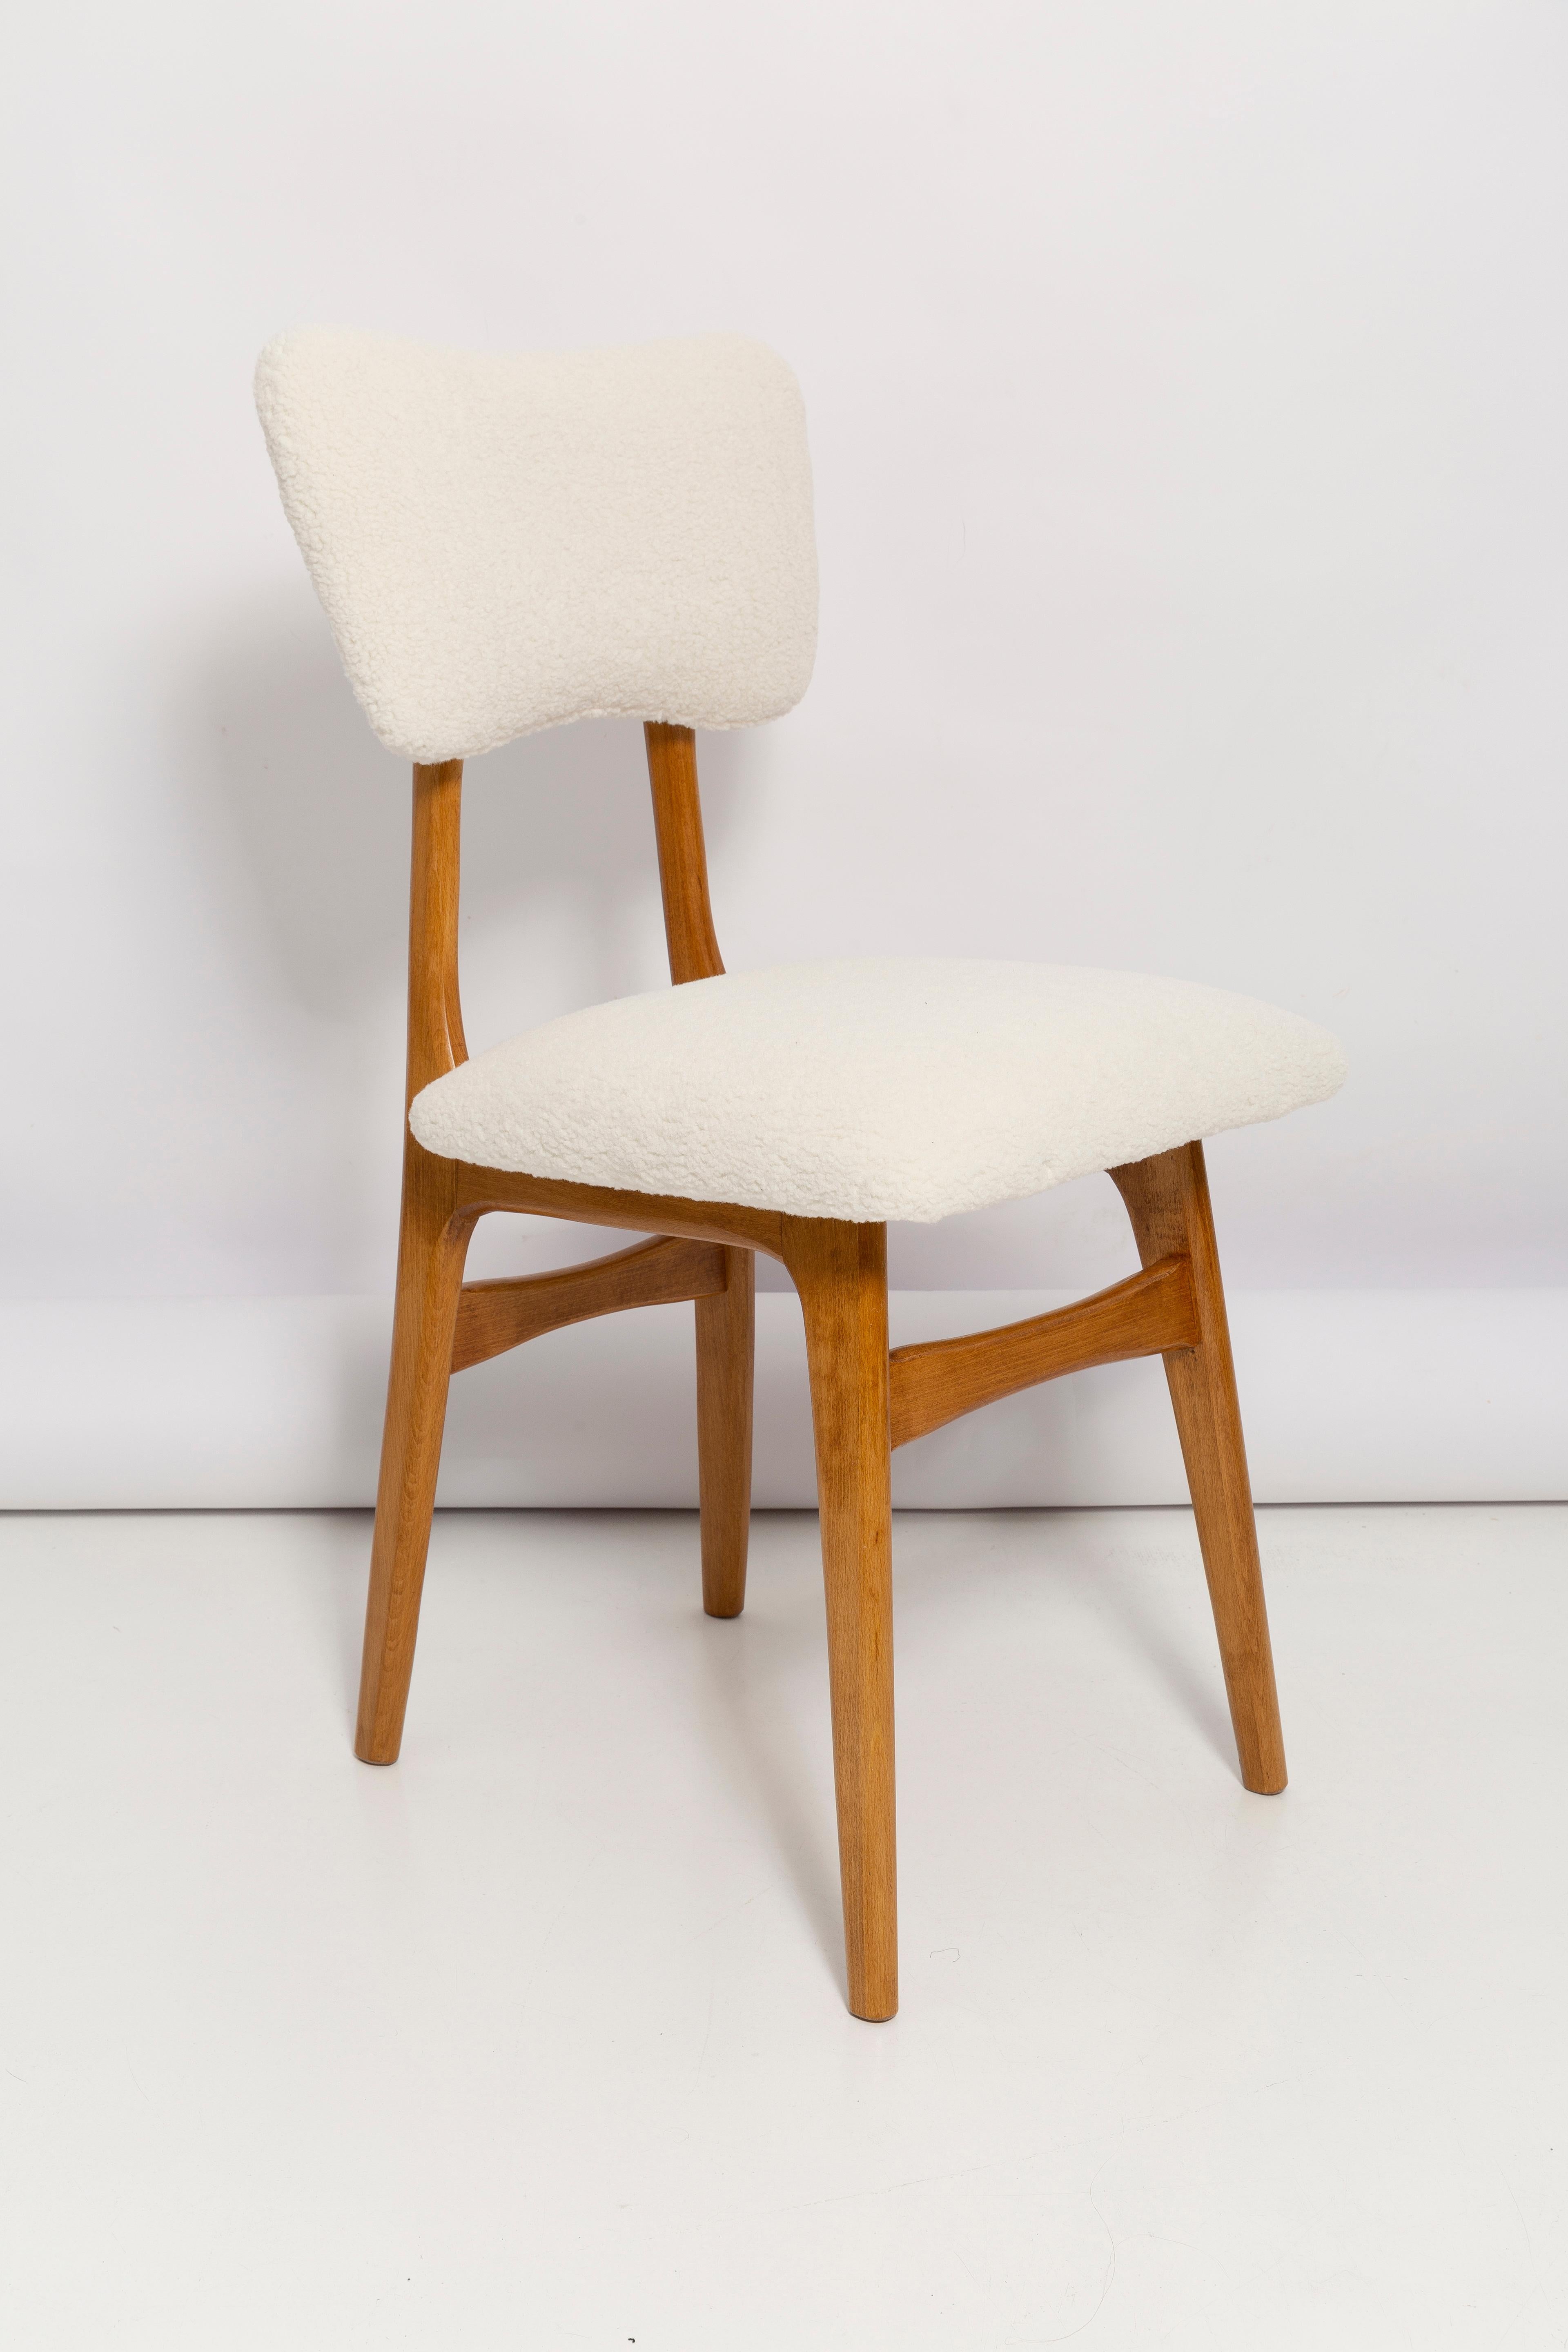 Chaises conçues par le professeur Rajmund Halas. Fabriqué en bois de hêtre. Les chaises ont fait l'objet d'une rénovation complète de leur revêtement ; les boiseries ont été rafraîchies et peintes dans une laque couleur cerise. L'assise et le